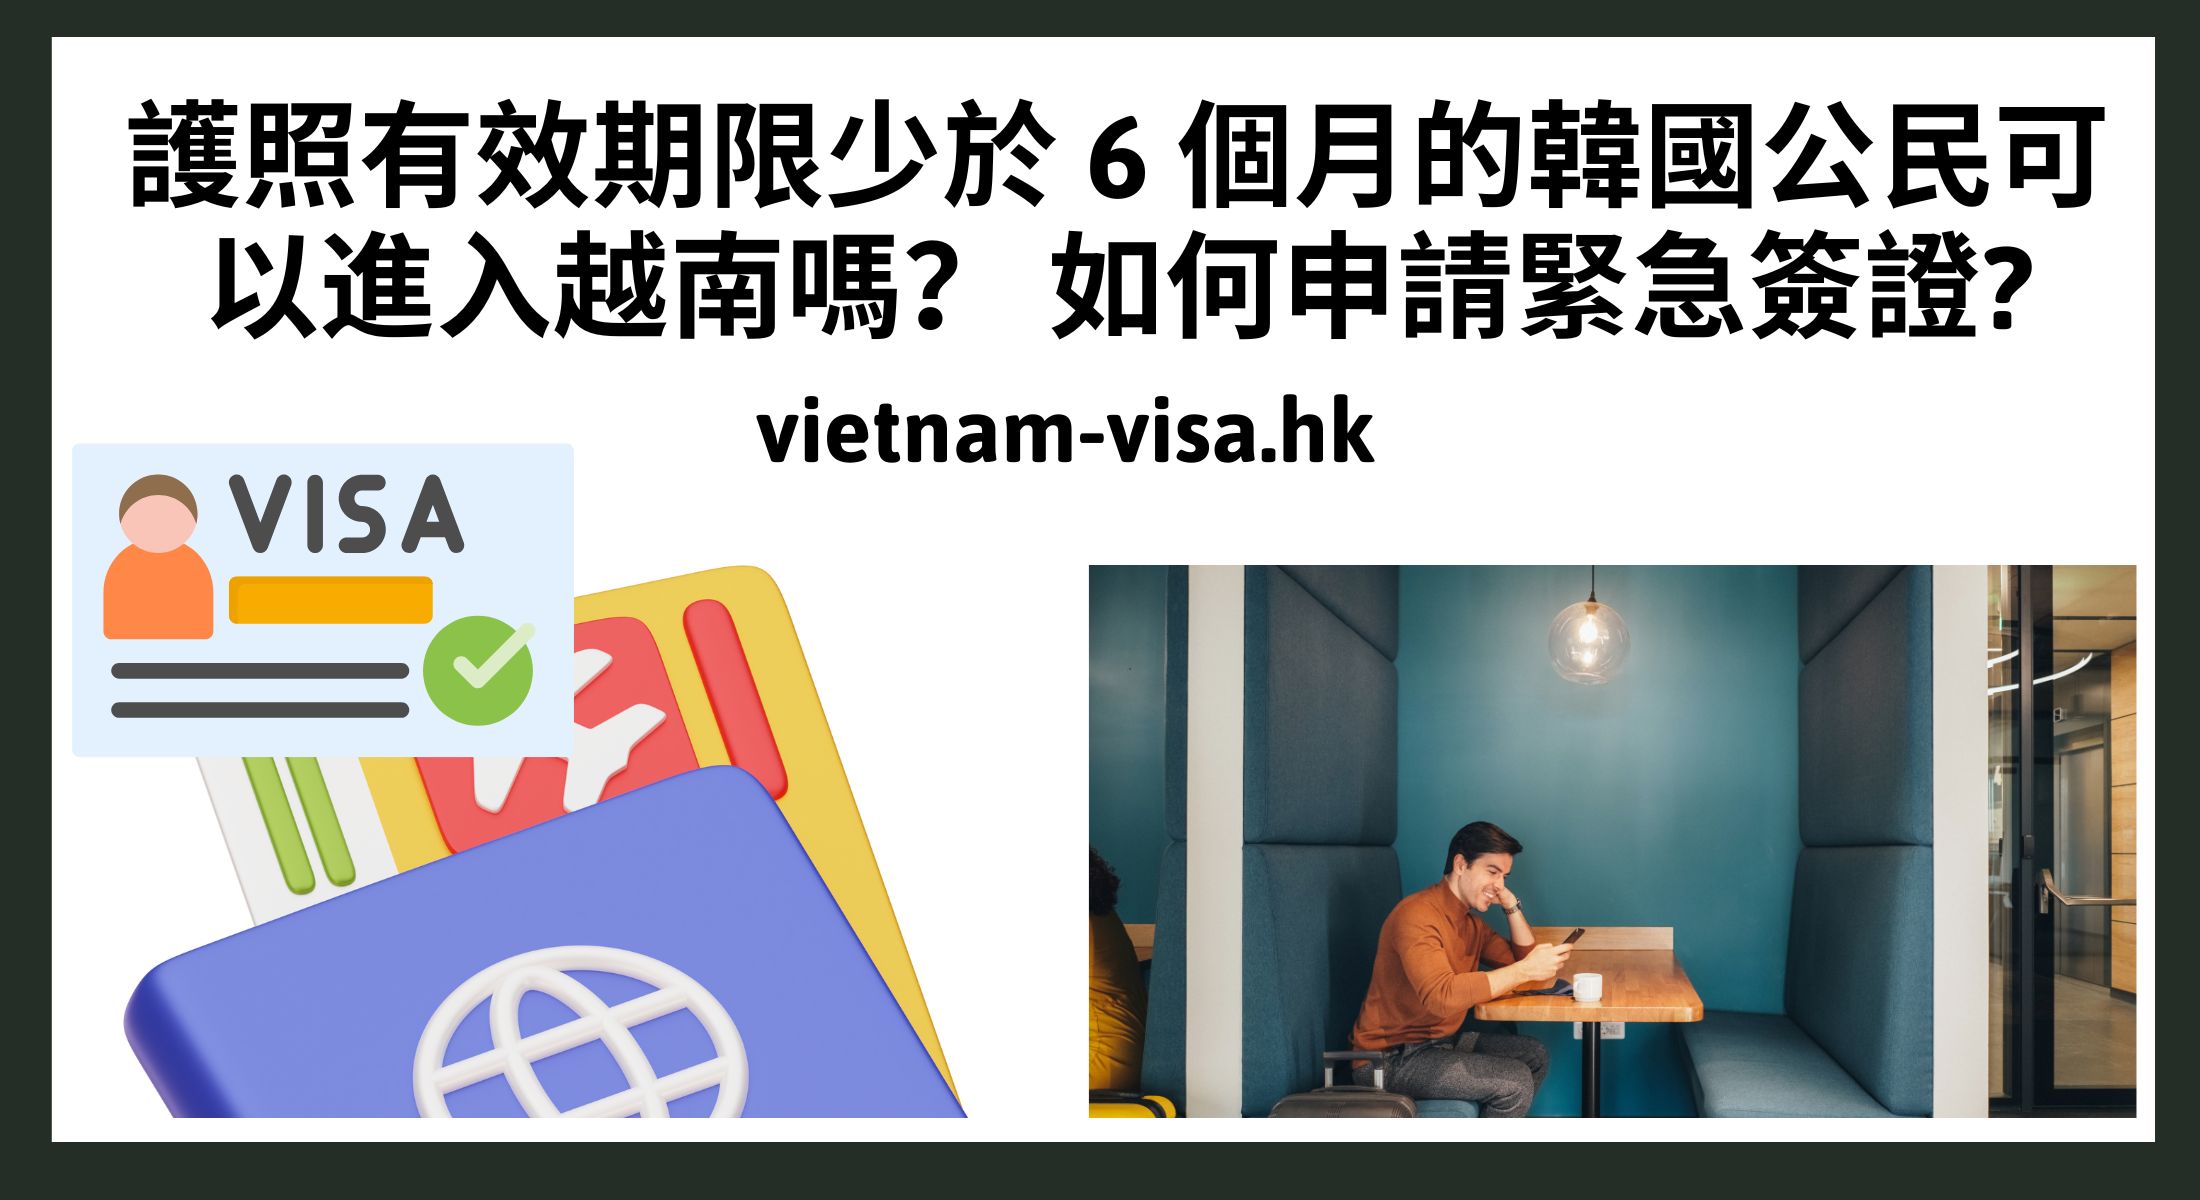 護照有效期限少於 6 個月的韓國公民可以進入越南嗎？ 如何申請緊急簽證?